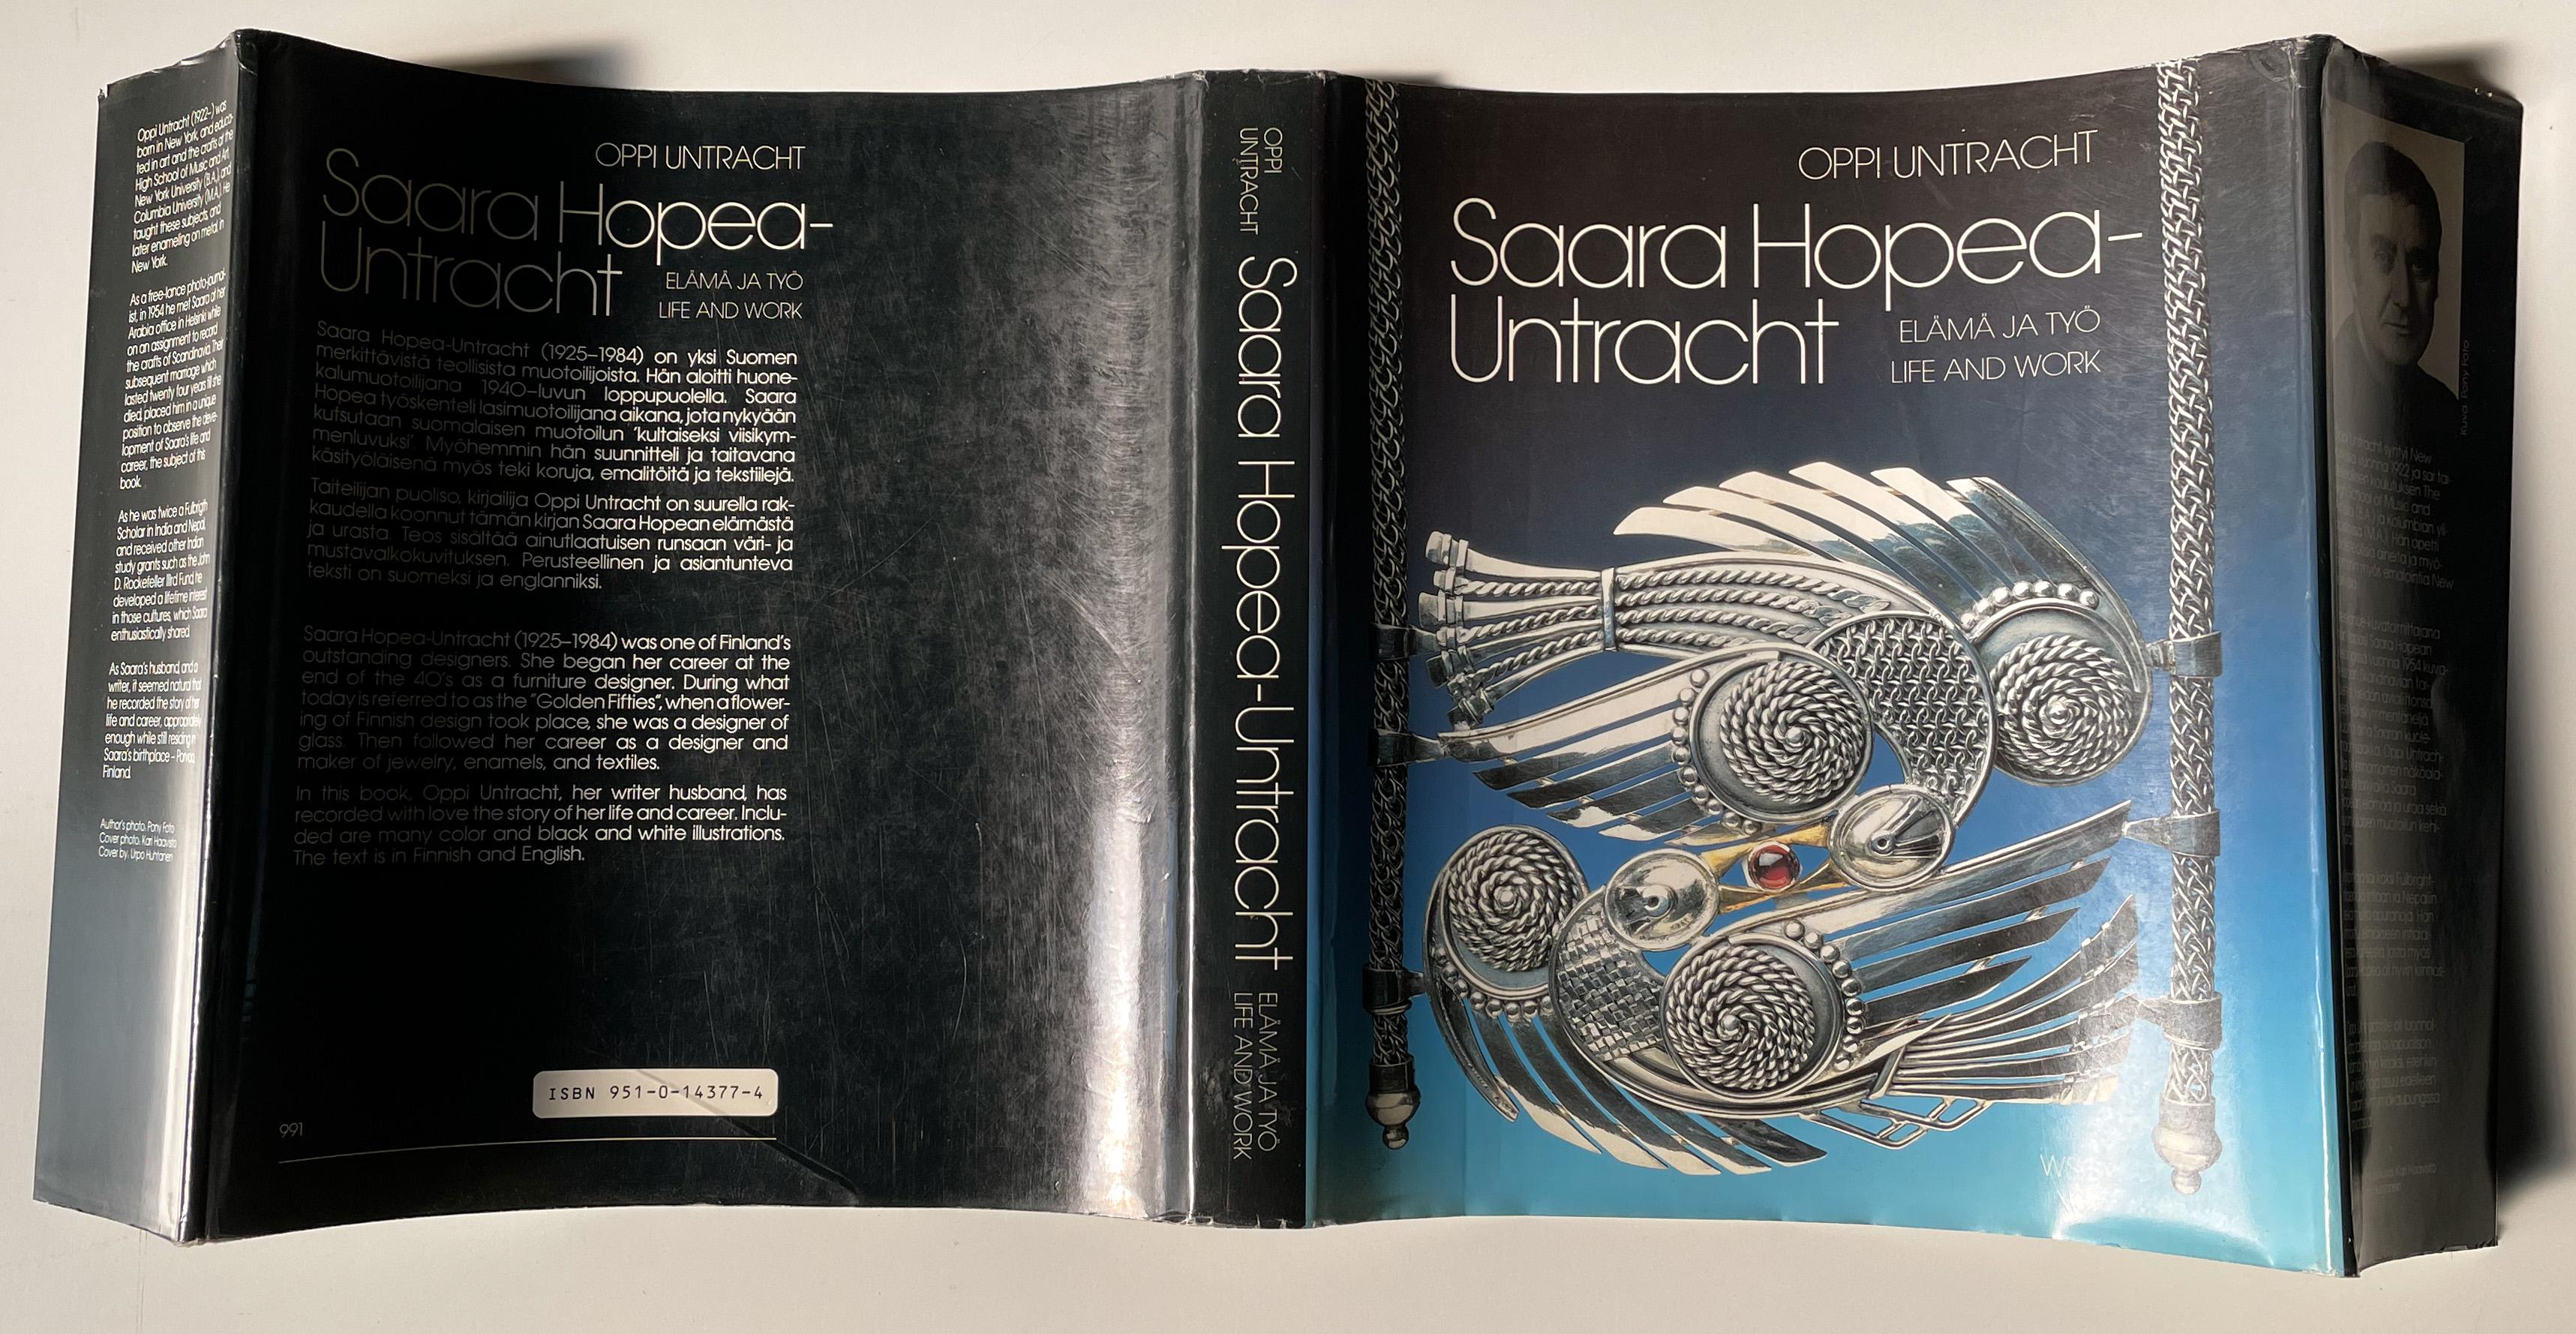 Monografie über die berühmte und produktive finnische Designerin Saara Hopea-Untracht aus der Mitte des Jahrhunderts, verfasst von ihrem Ehemann, dem amerikanischen Metallschmied, Pädagogen und Schriftsteller Oppi Untracht. Veröffentlicht 1988 von